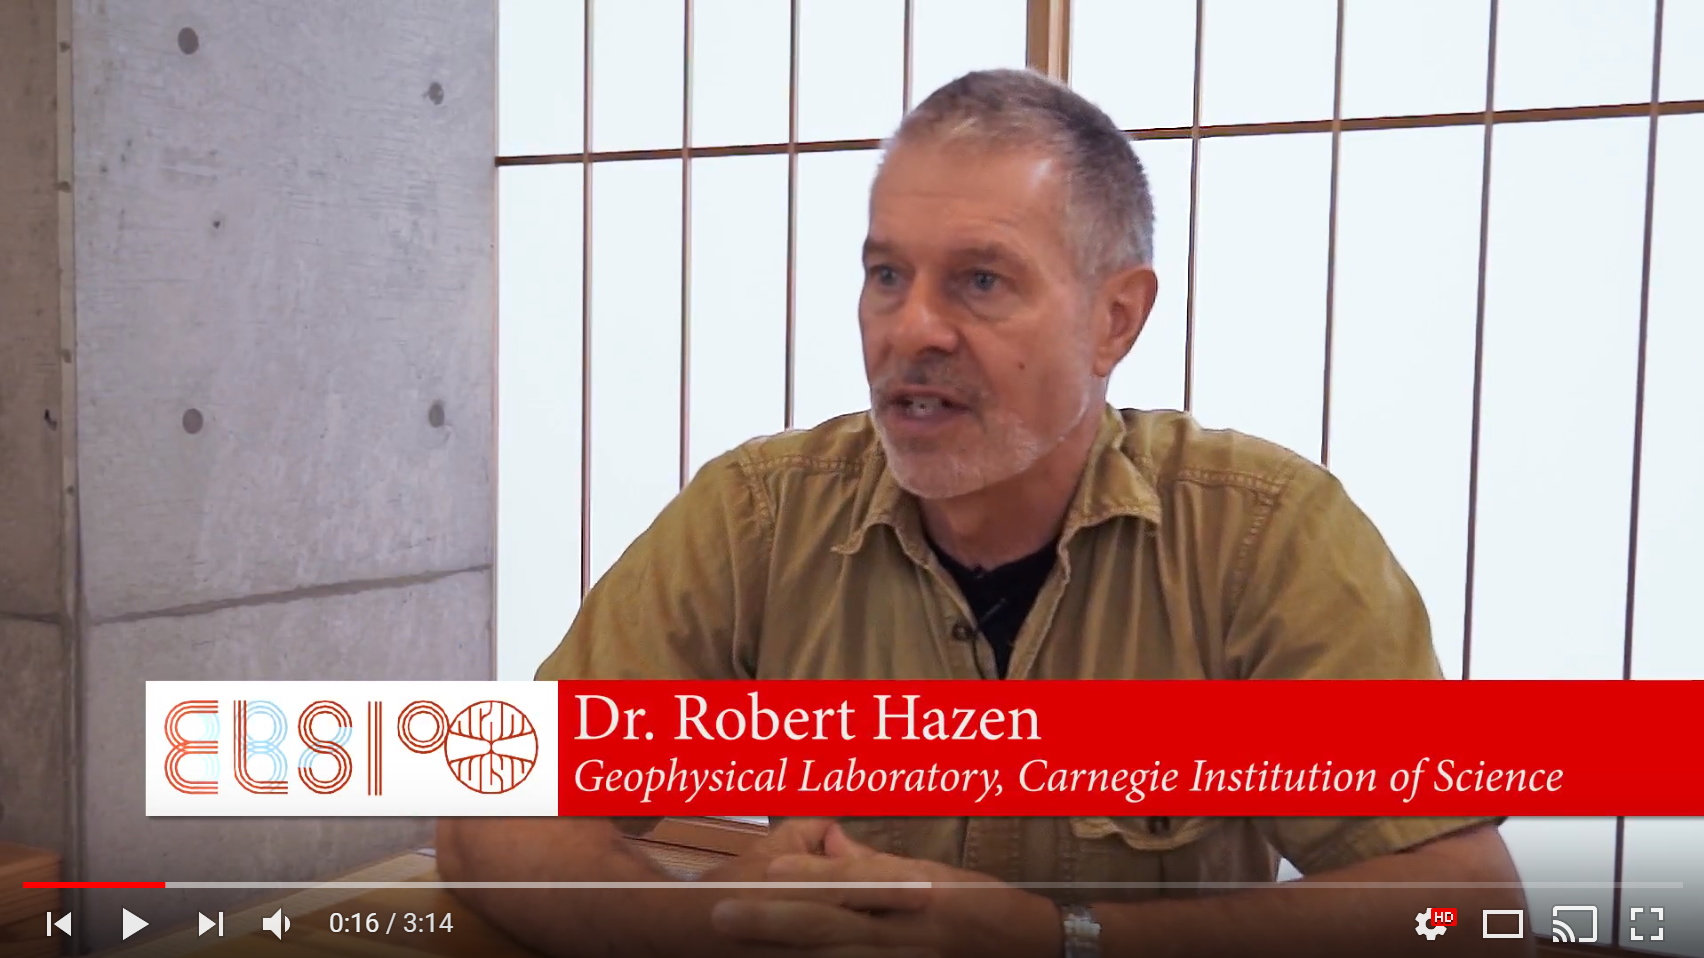 Dr. Robert Hazen Speaks